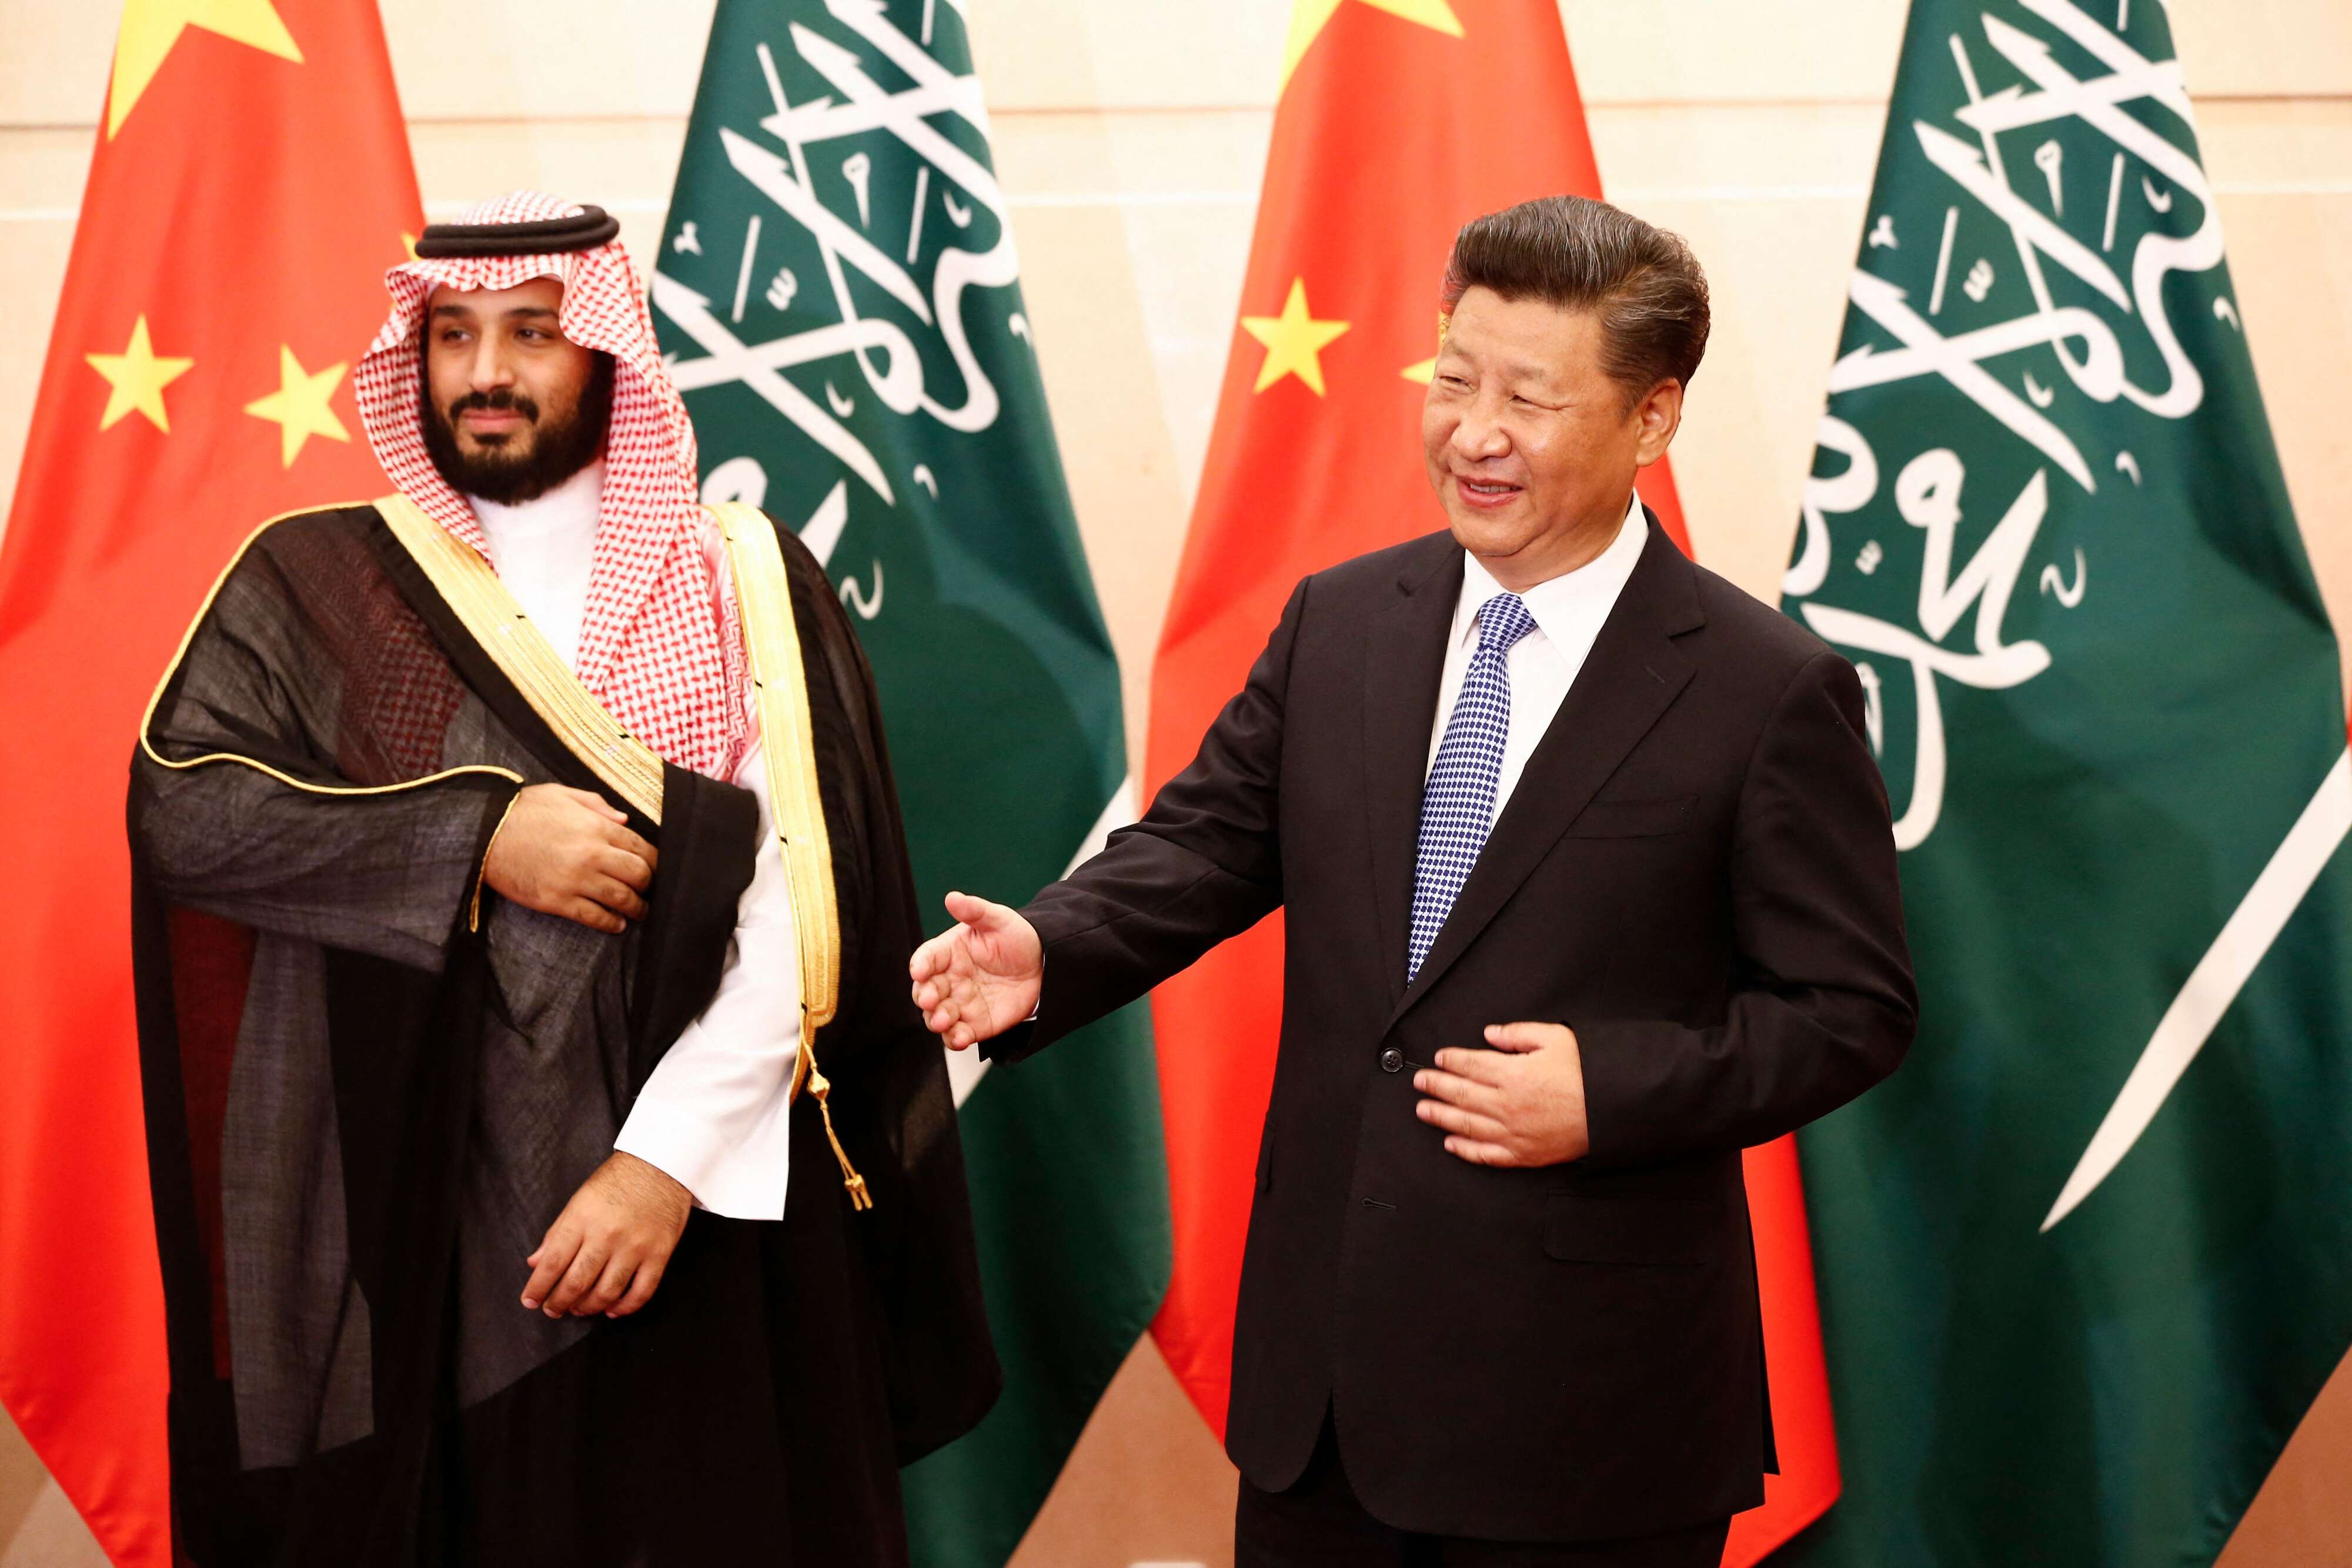 مصالح متبادلة ومتغيرات جيوسياسية تسرع جهود التقارب السعودي الصيني